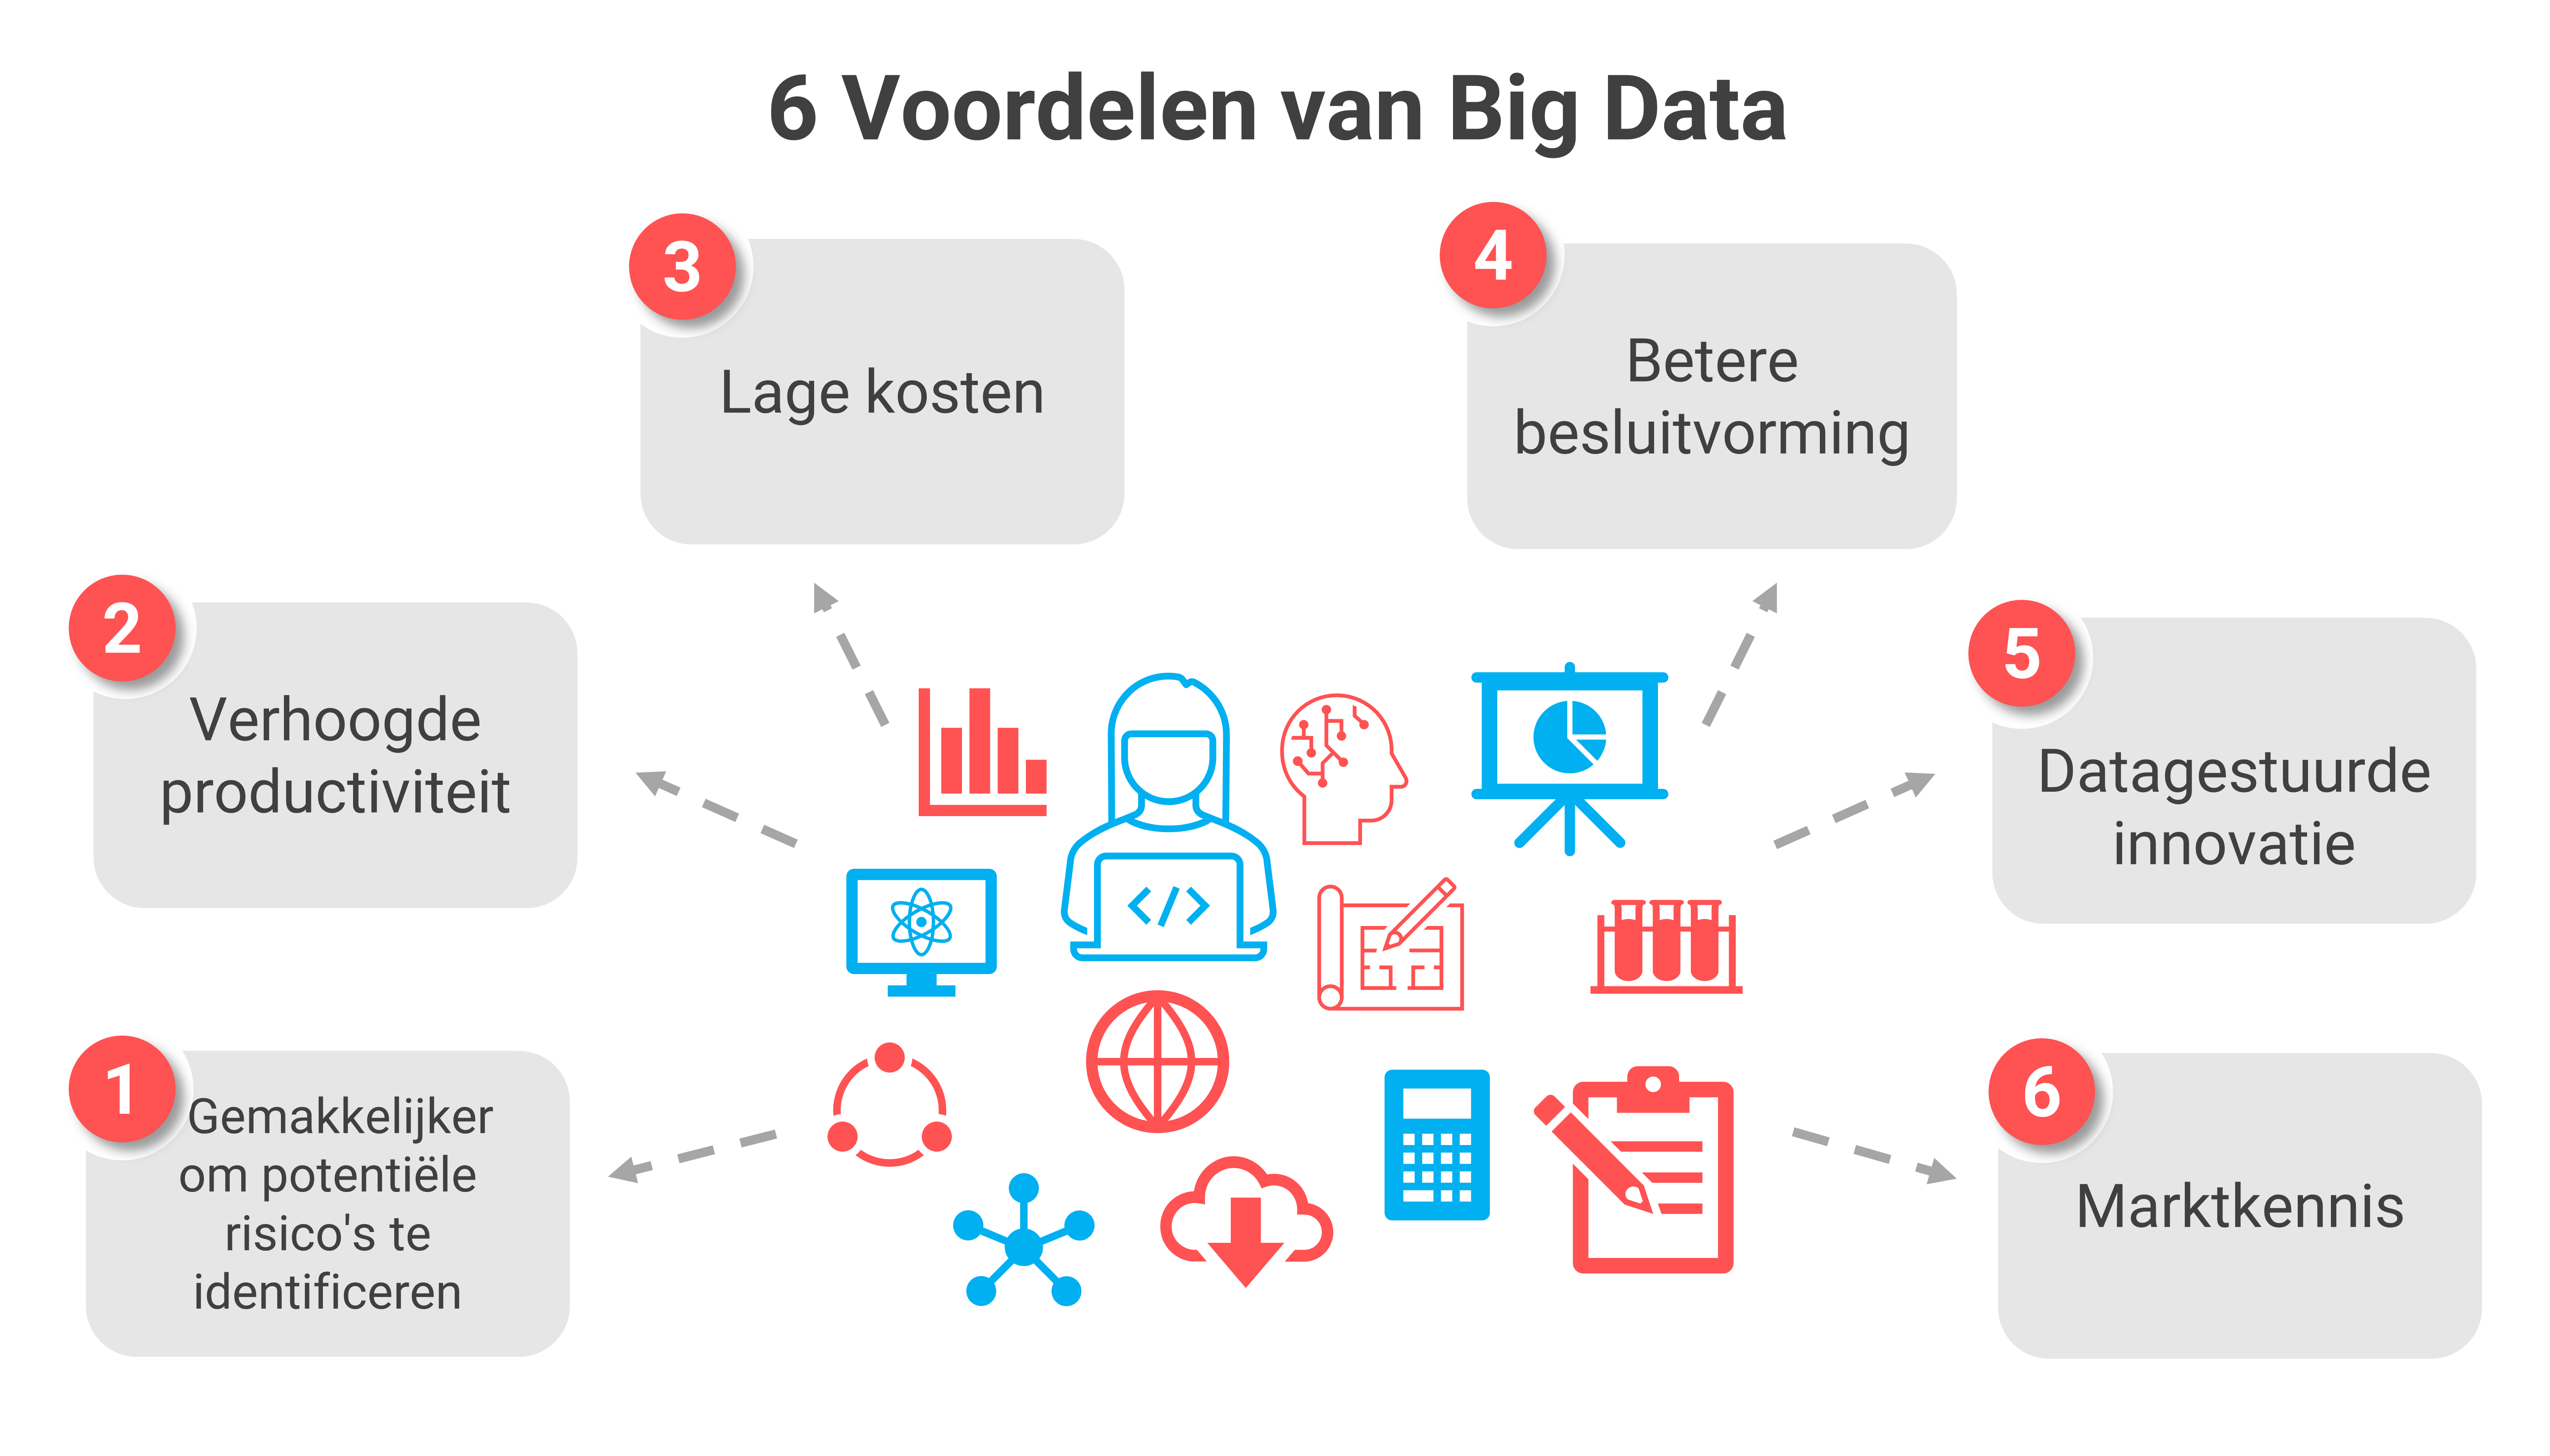 6 Voordelen van big data